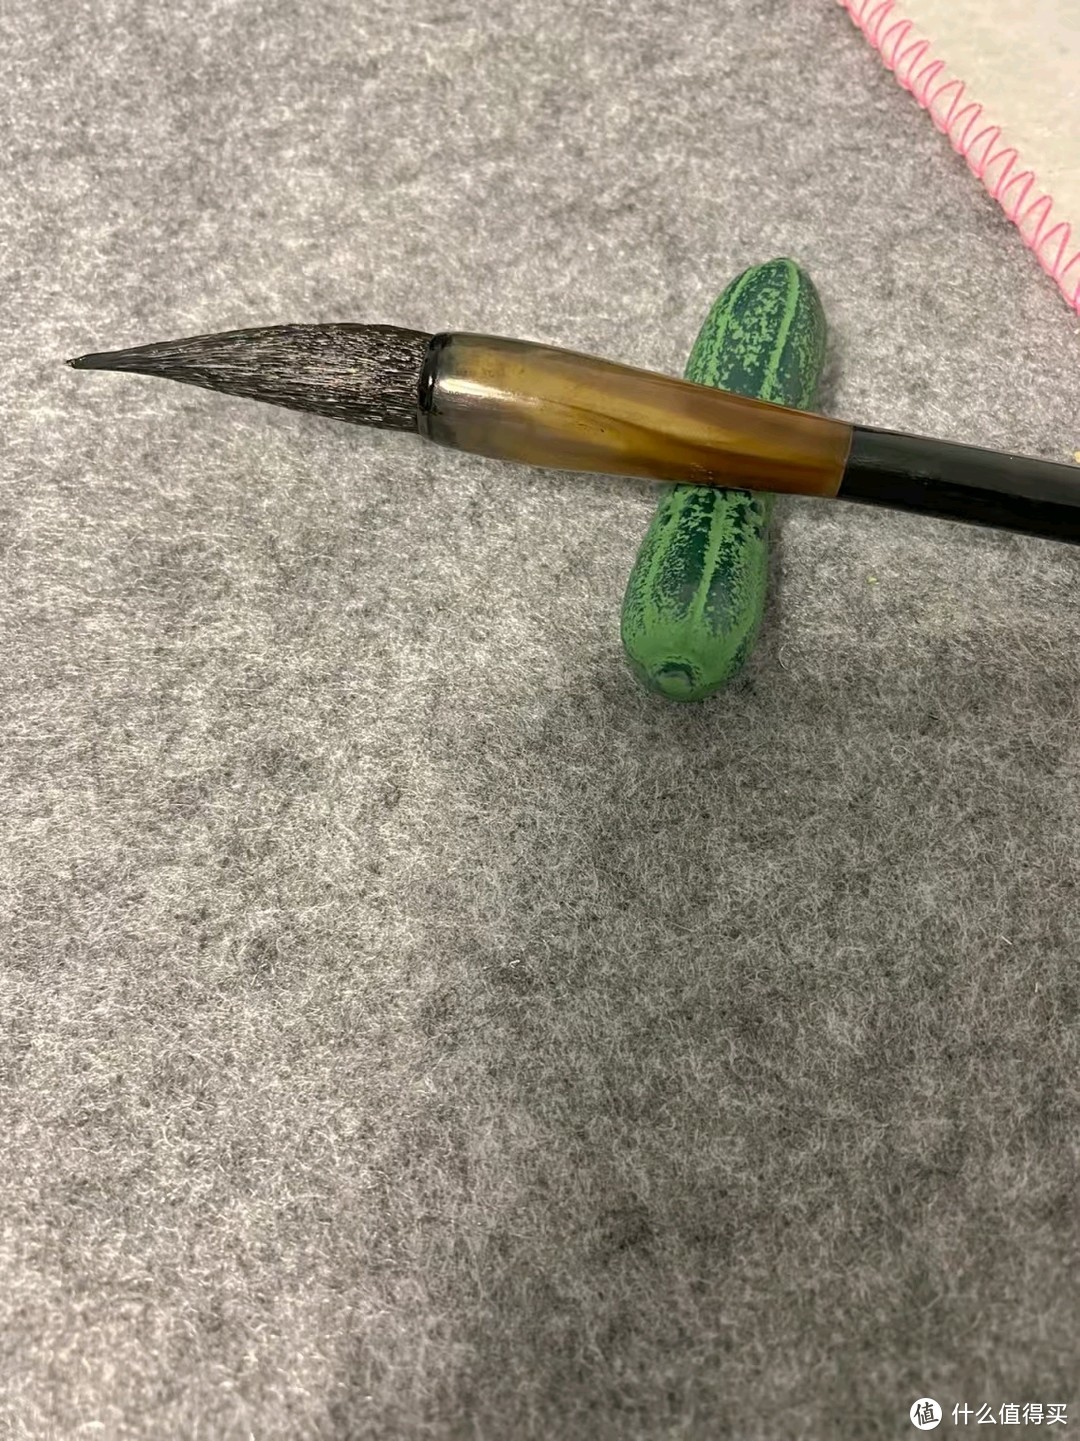 小黄瓜硬质的毛笔托。